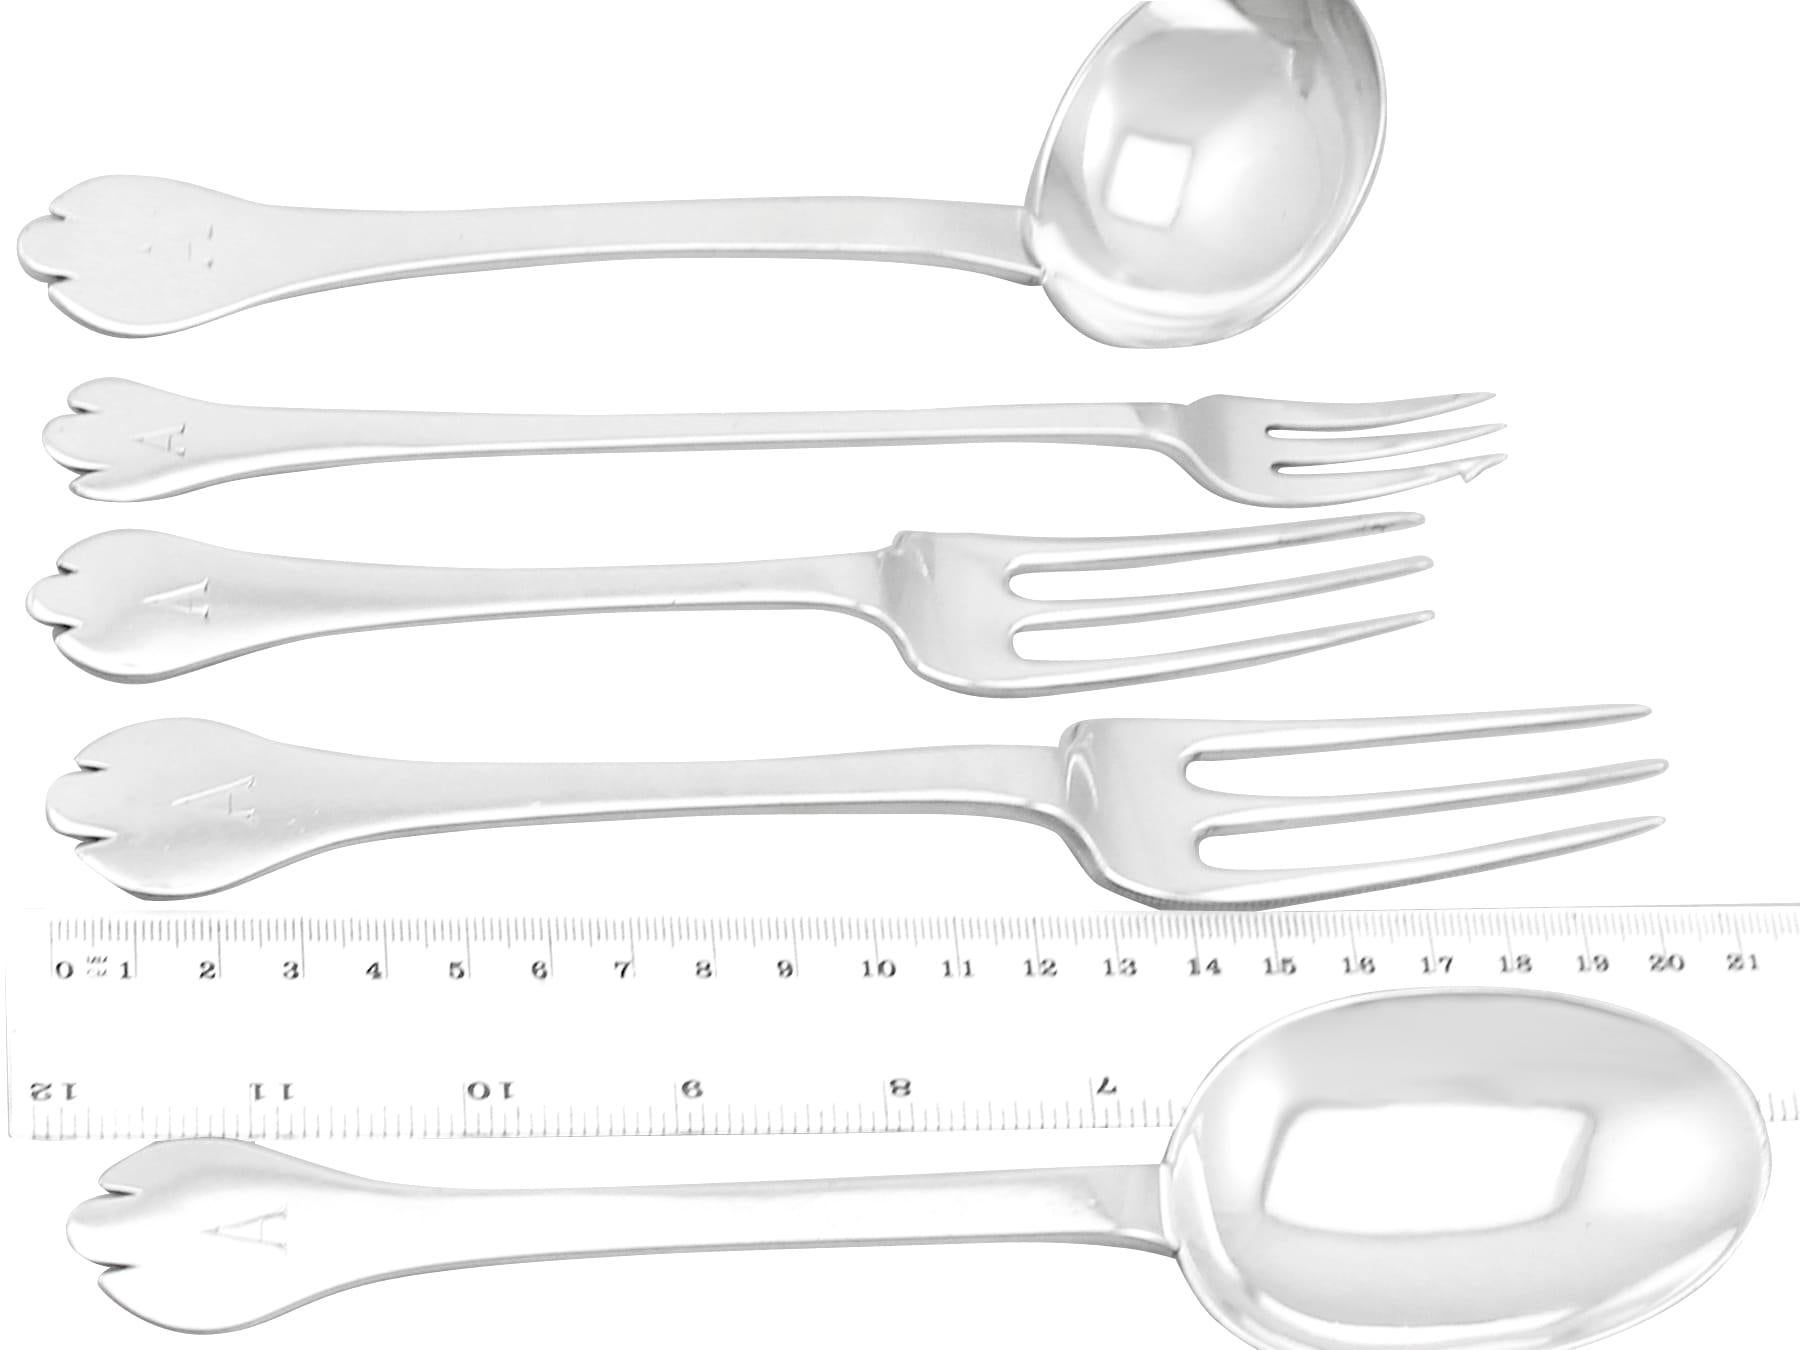 elkington & co silver spoons